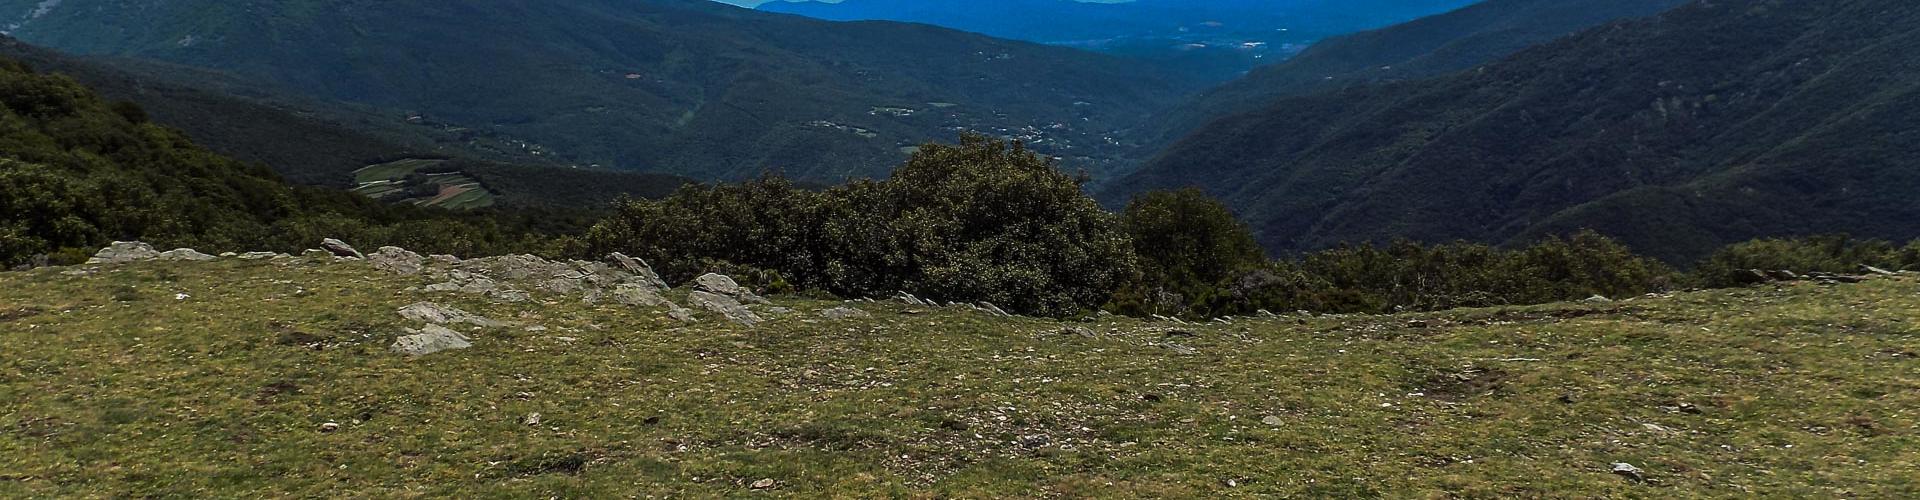 Vall de la Tordera i el Montnegre des del serrat del Puig Ventós